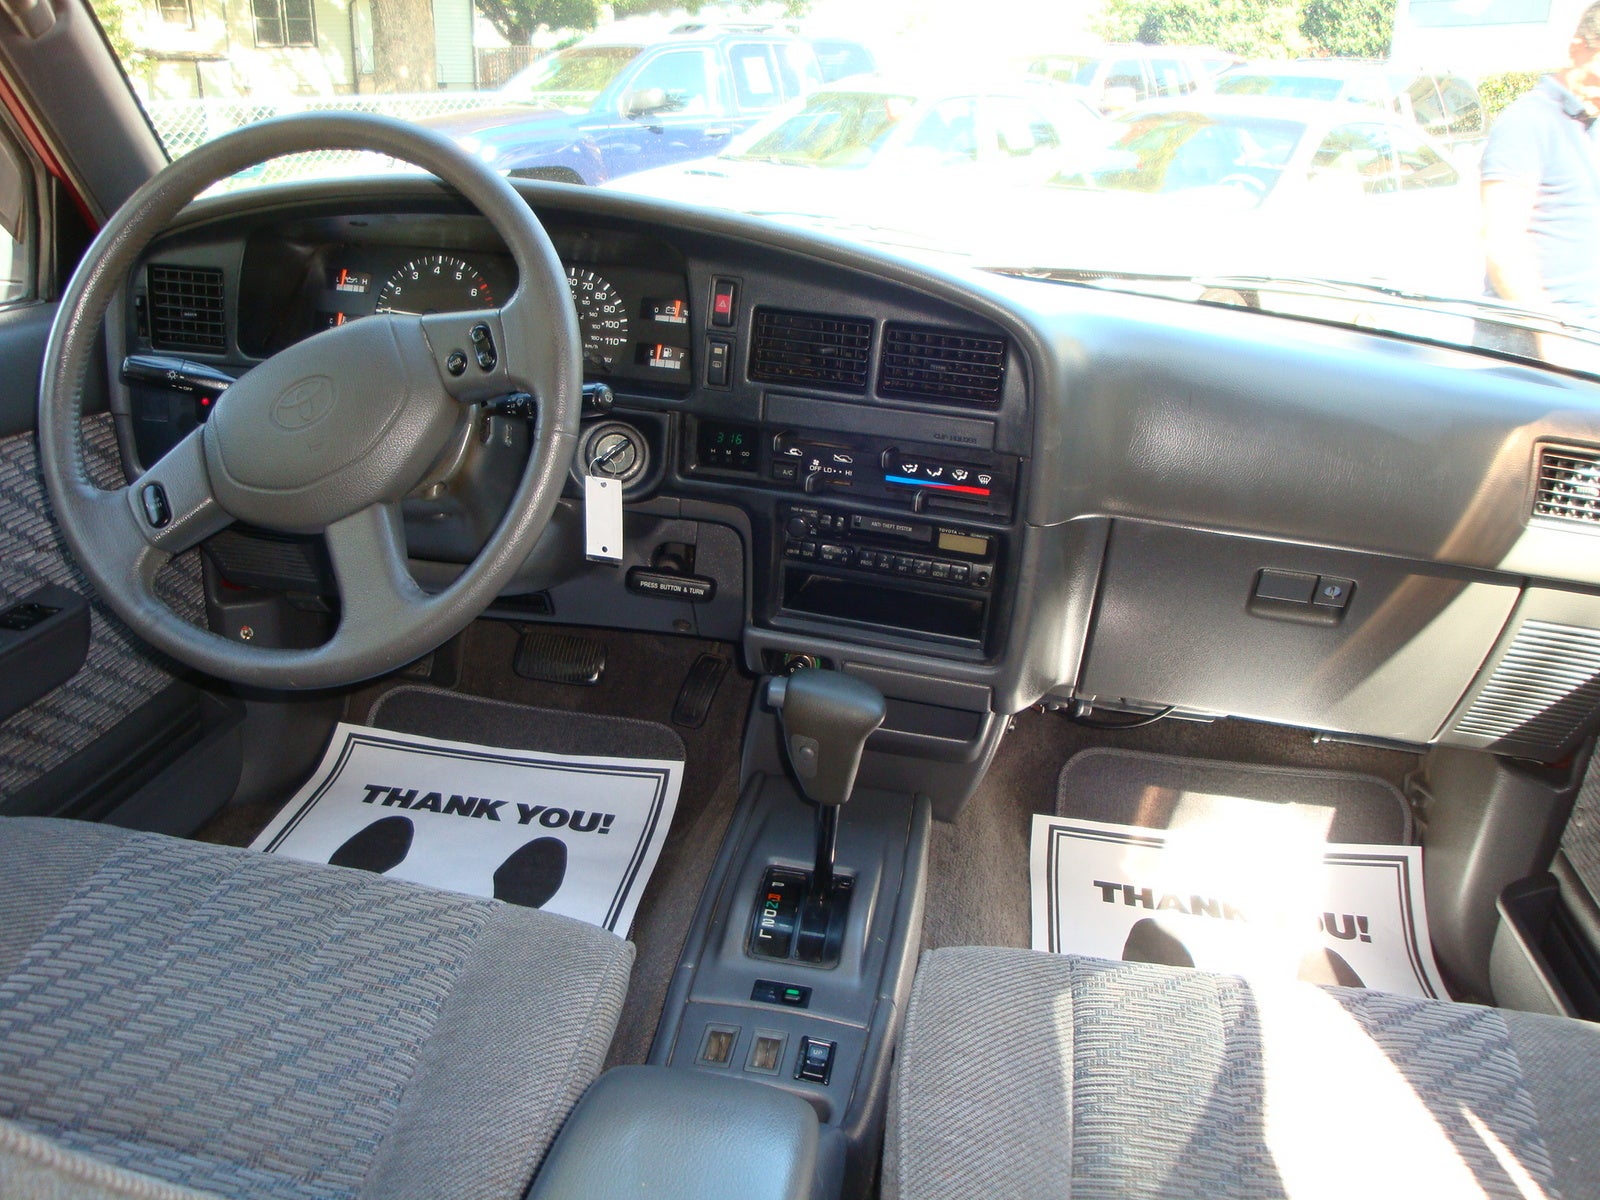 1995 Toyota 4Runner - Pictures - CarGurus